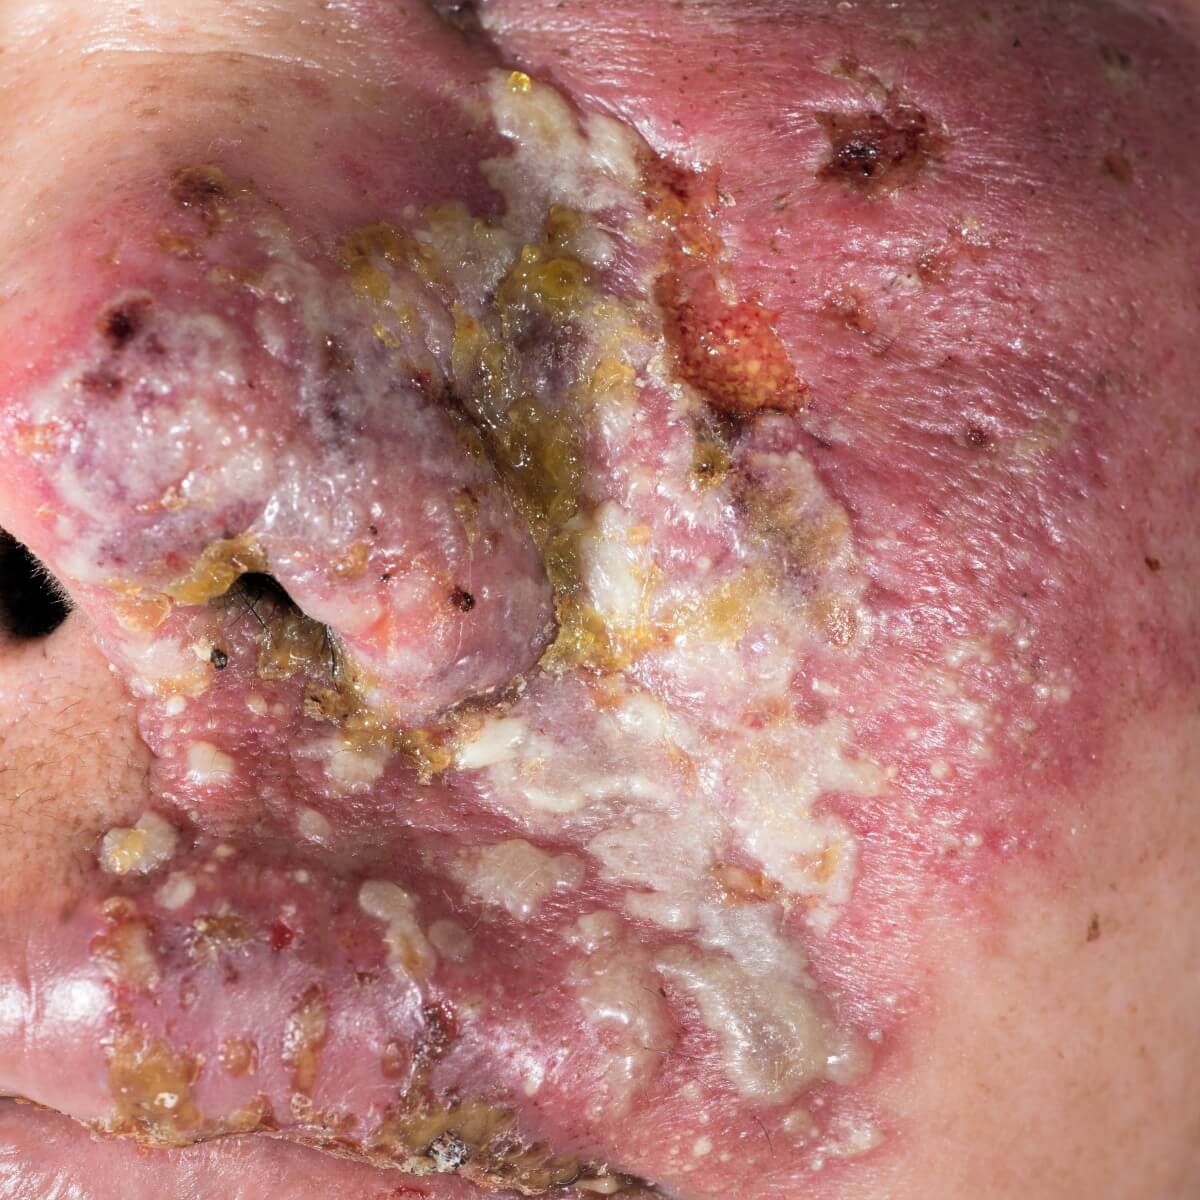 Gürtelrose / Herpes Zoster Infektion im Gesicht